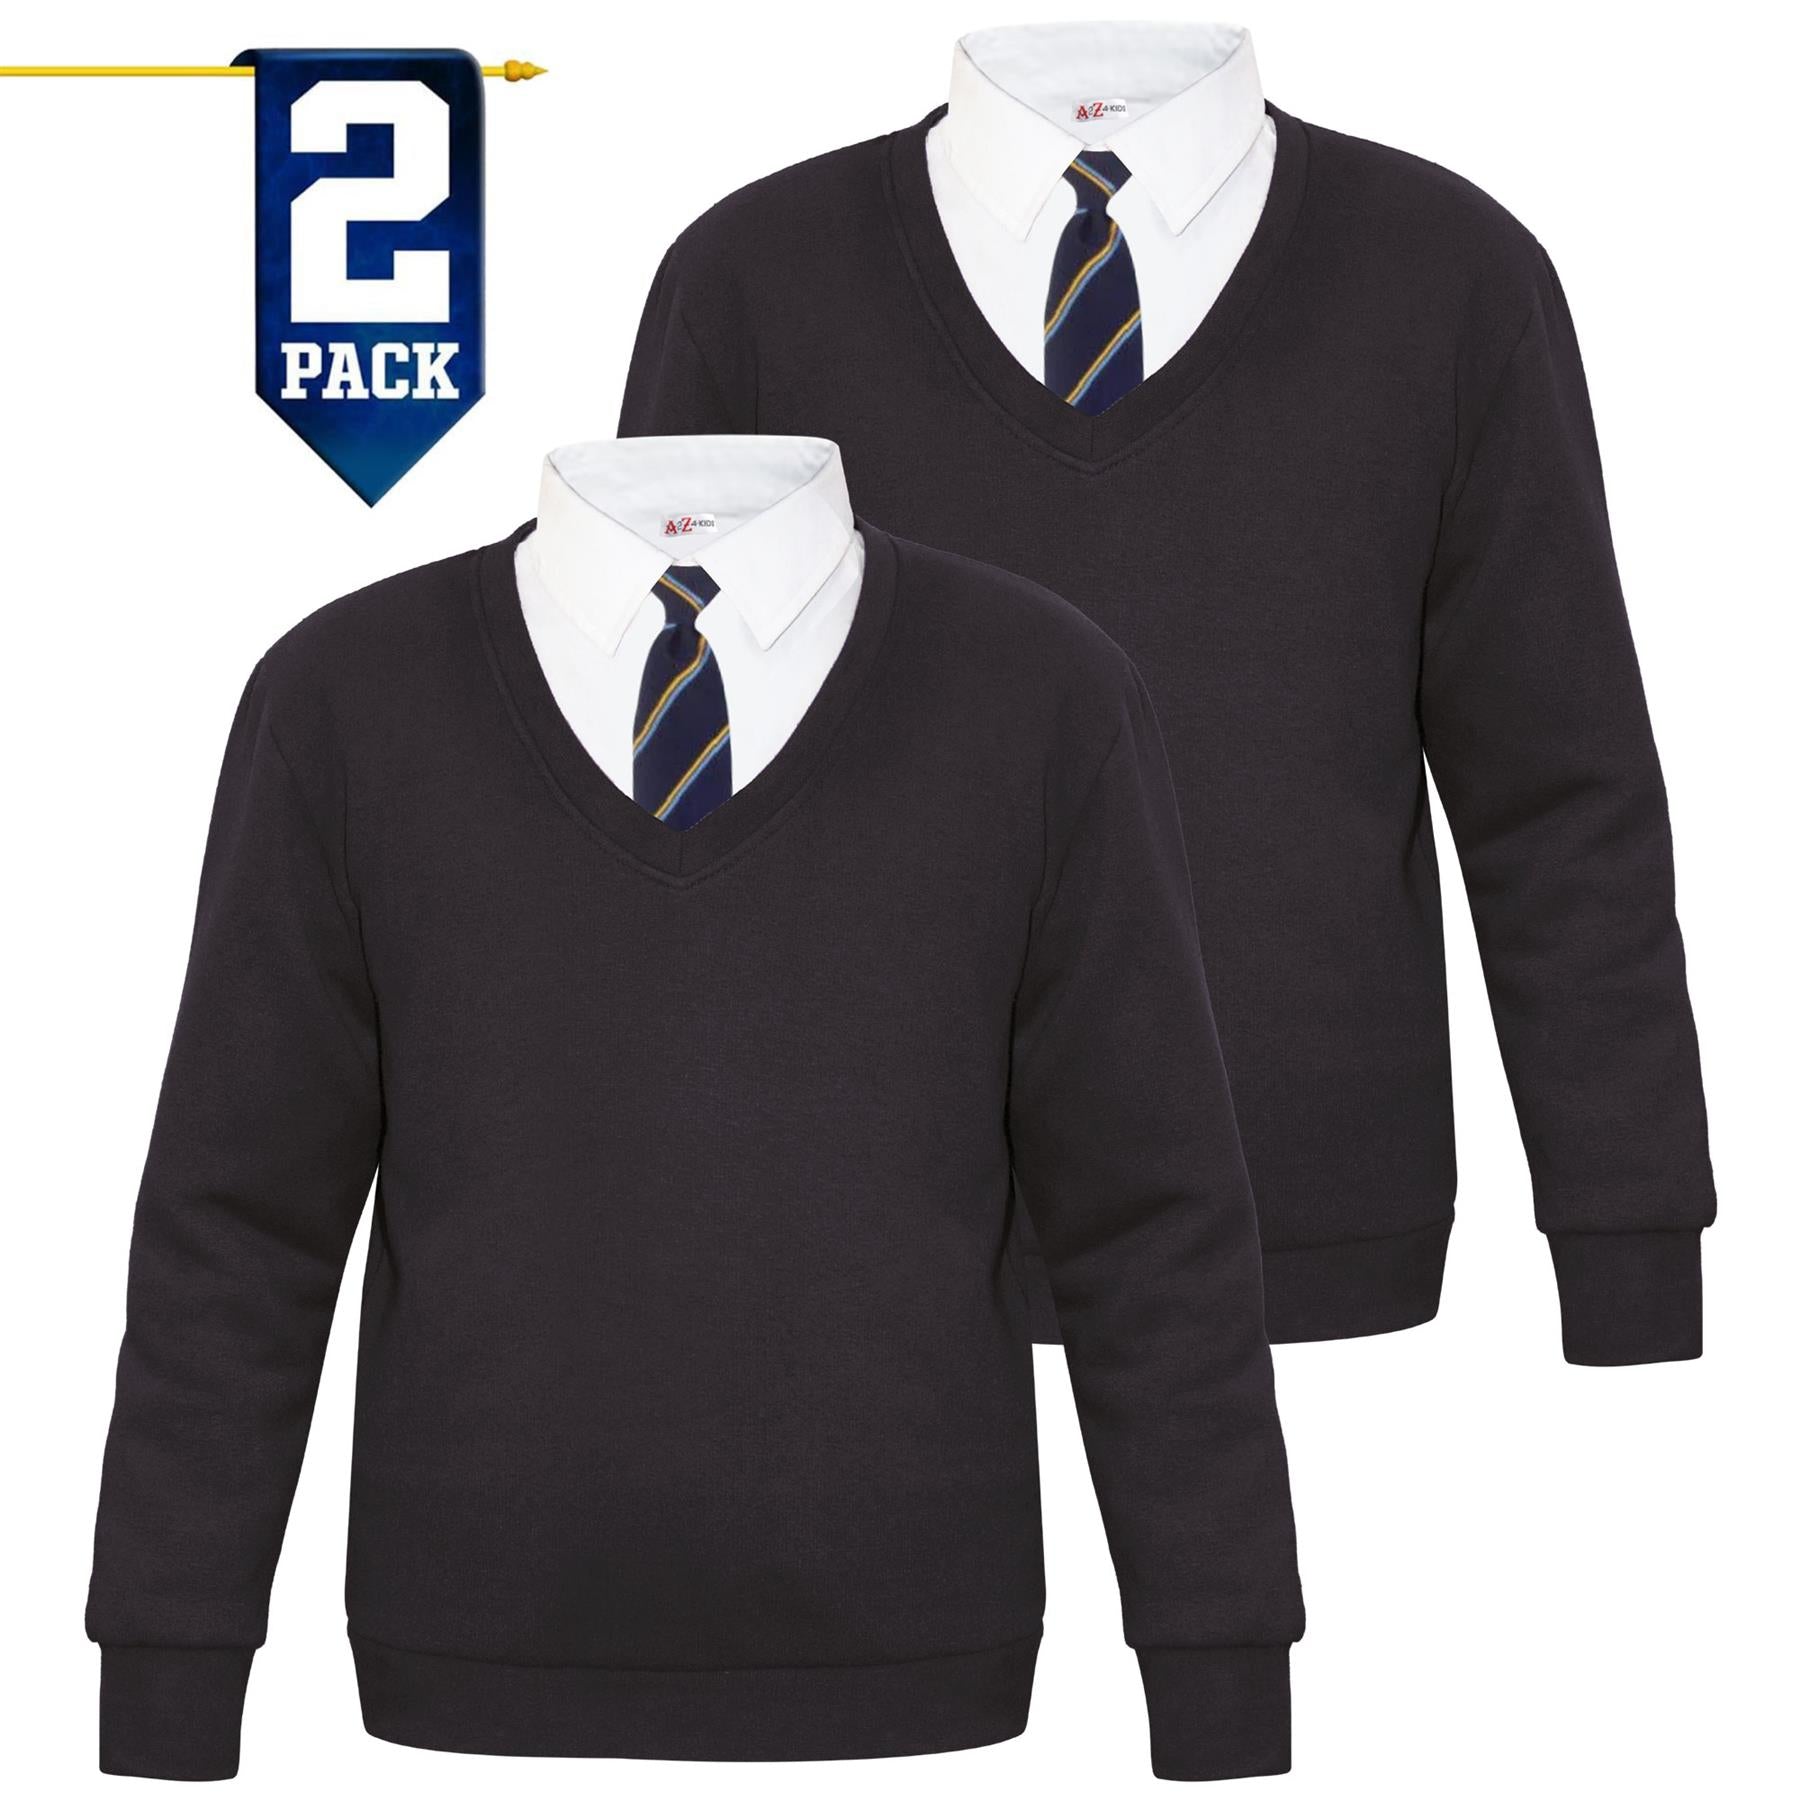 Kids Girls Boys Scouts School Uniform V Neck Jumper Single & 2 Pack Sweatshirt